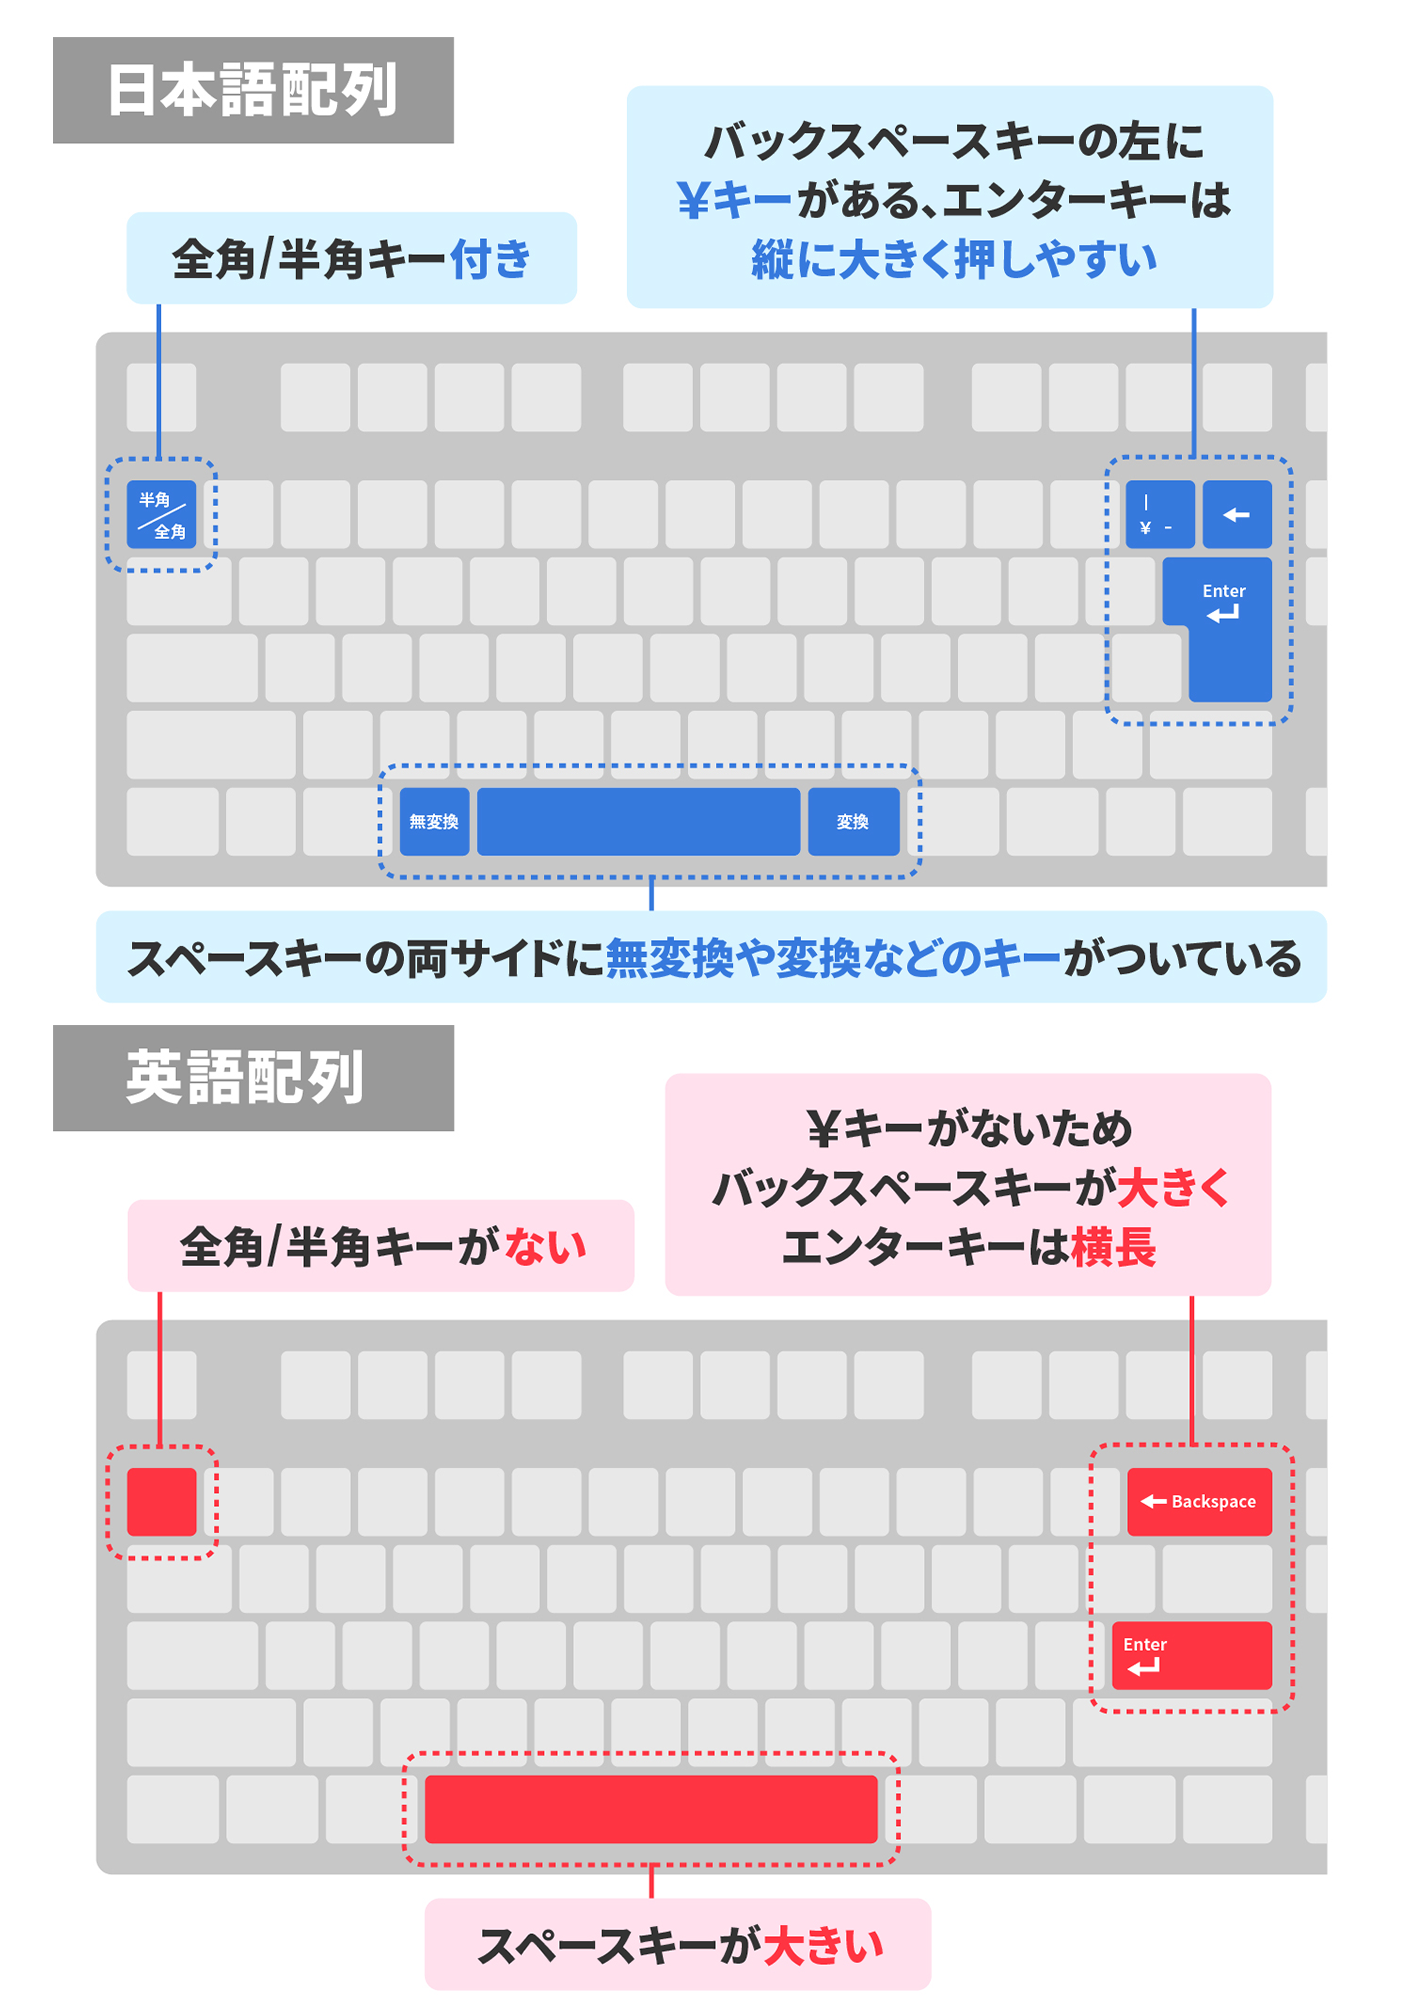 iClever ゲーミングキーボード 赤軸 テンキーレス 日本語配列 有線 91キー メカニカルスイッチ LEDバックライト Windows XP  Vista 10対応 G01 宅配便配送